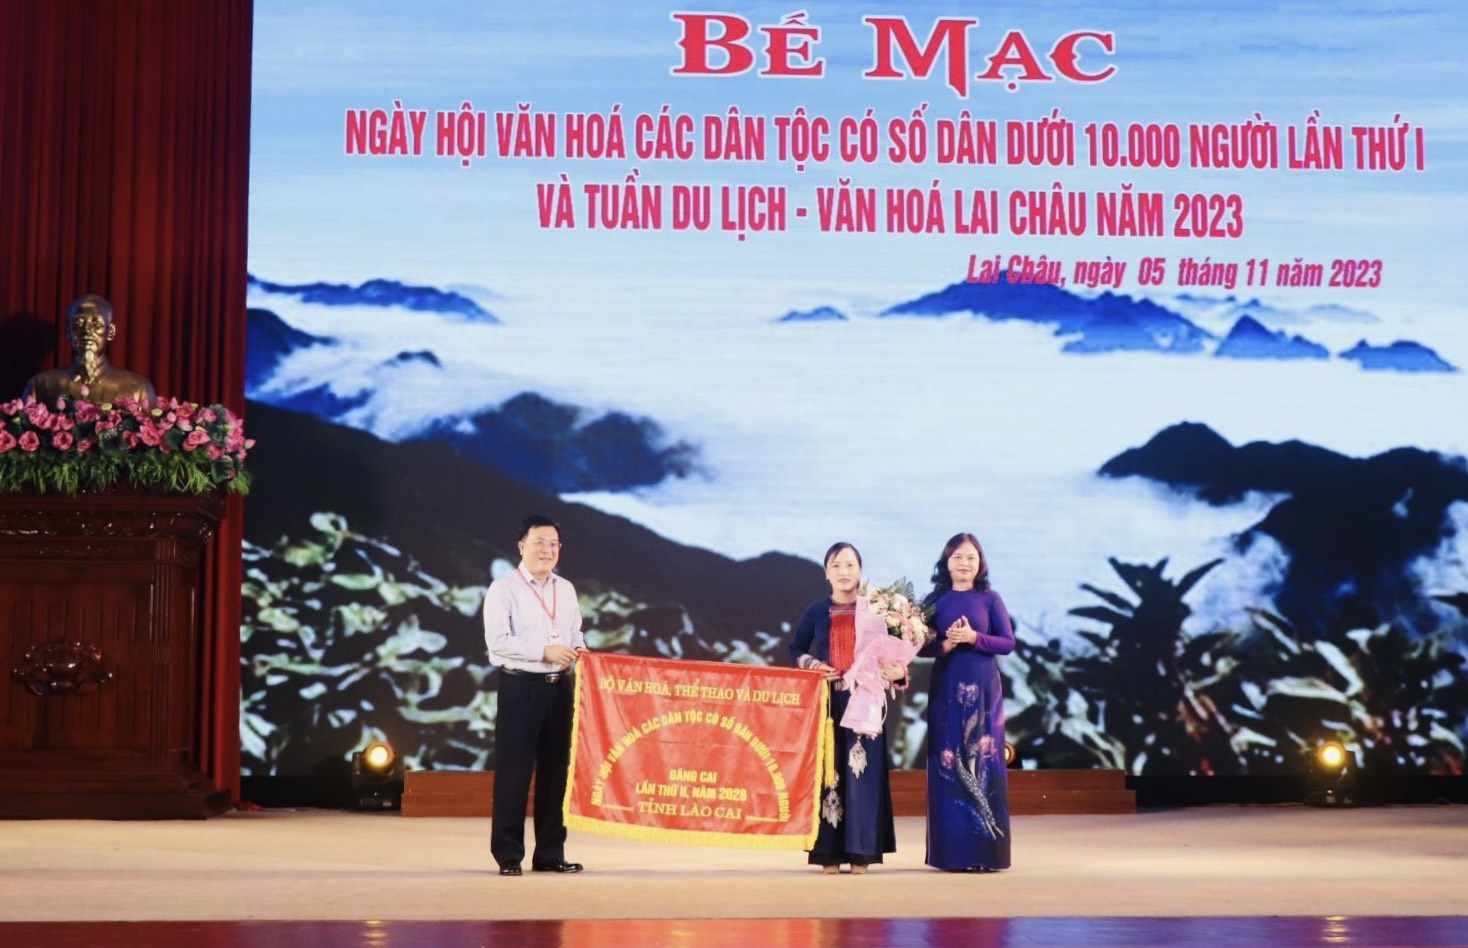 Vụ trưởng Vụ Văn hoá dân tộc Nguyễn Thị Hải Nhung và Giám đốc Sở VHTTDL Lai Châu Lương Chiến Công trao cờ đăng cai Ngày hội Văn hoá các dân tộc có số dân dưới 10.000 người lần thứ hai, năm 2028 cho tỉnh Lào Cai